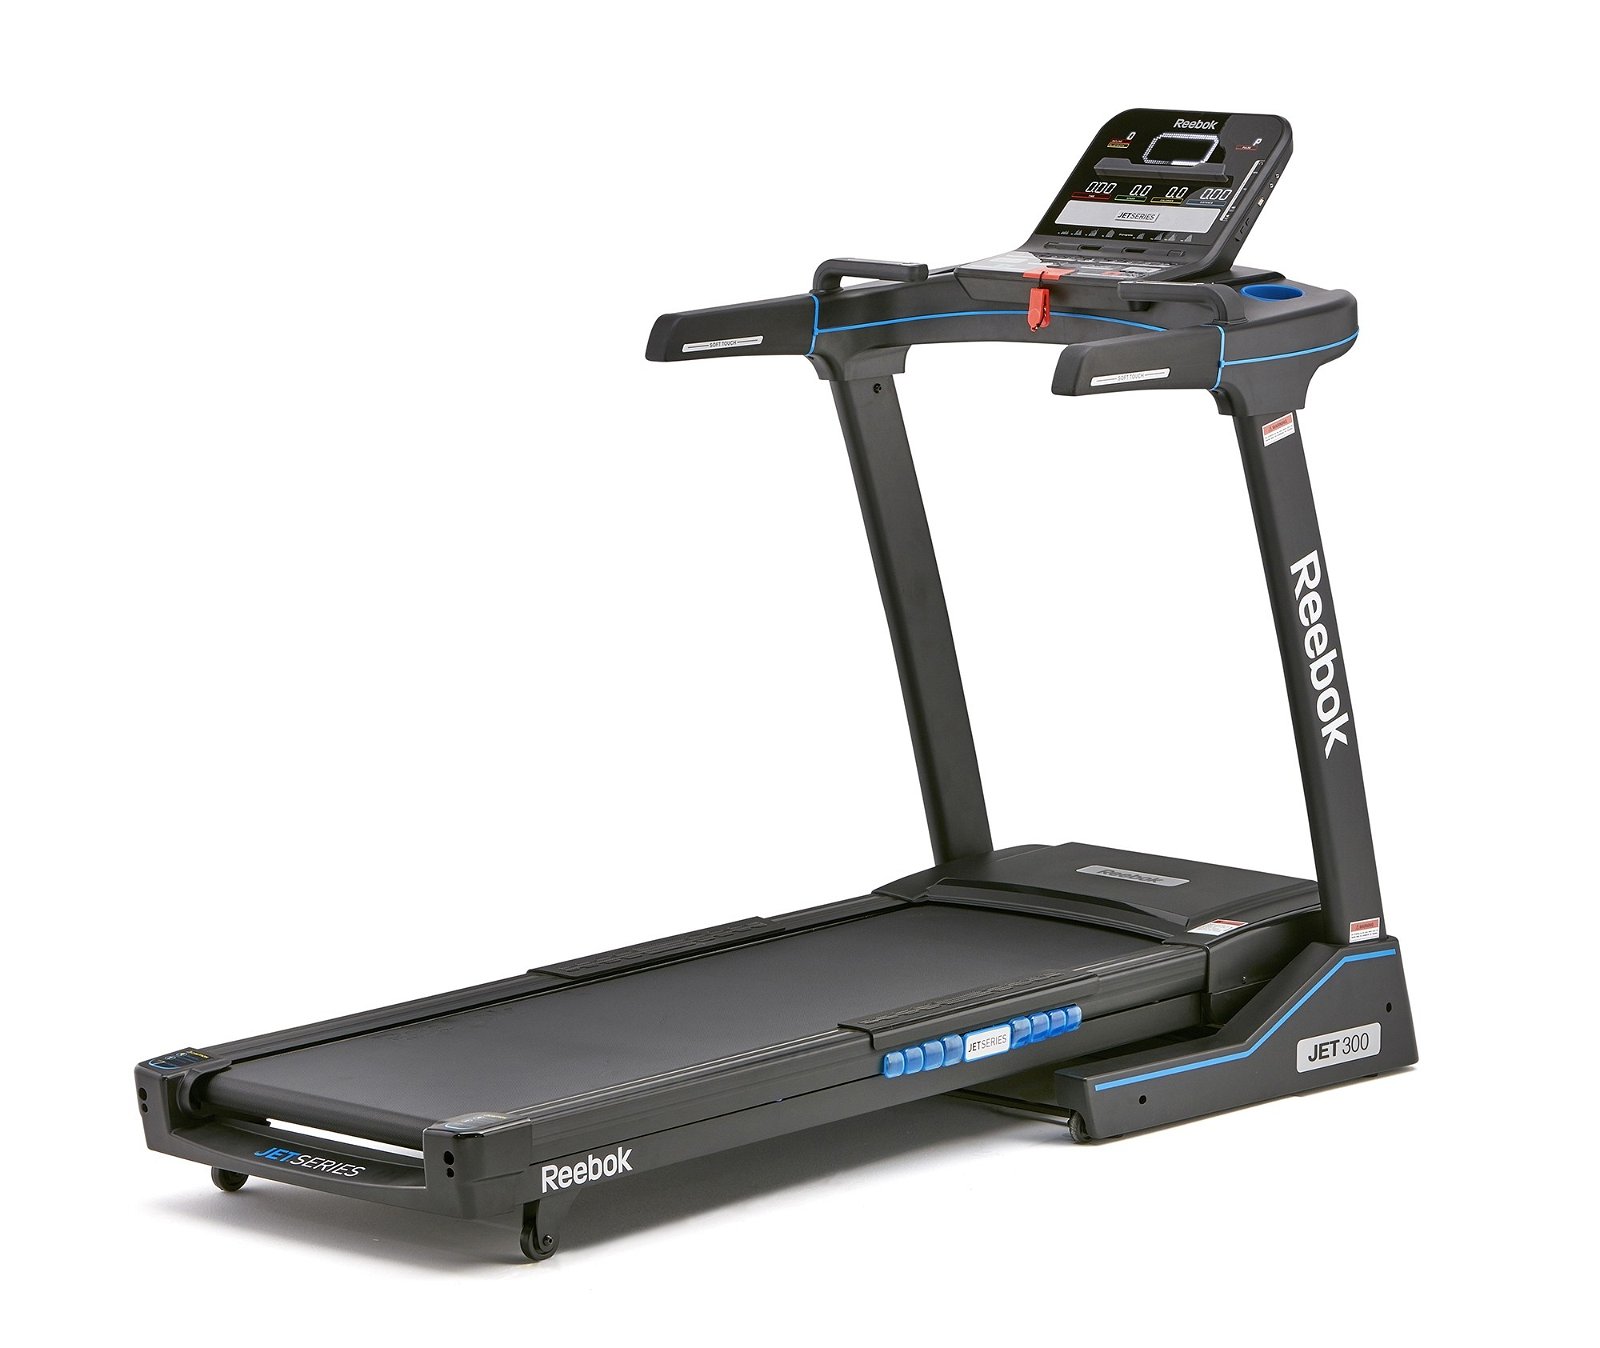 Läs mer om Reebok Treadmill Jet 300 Series